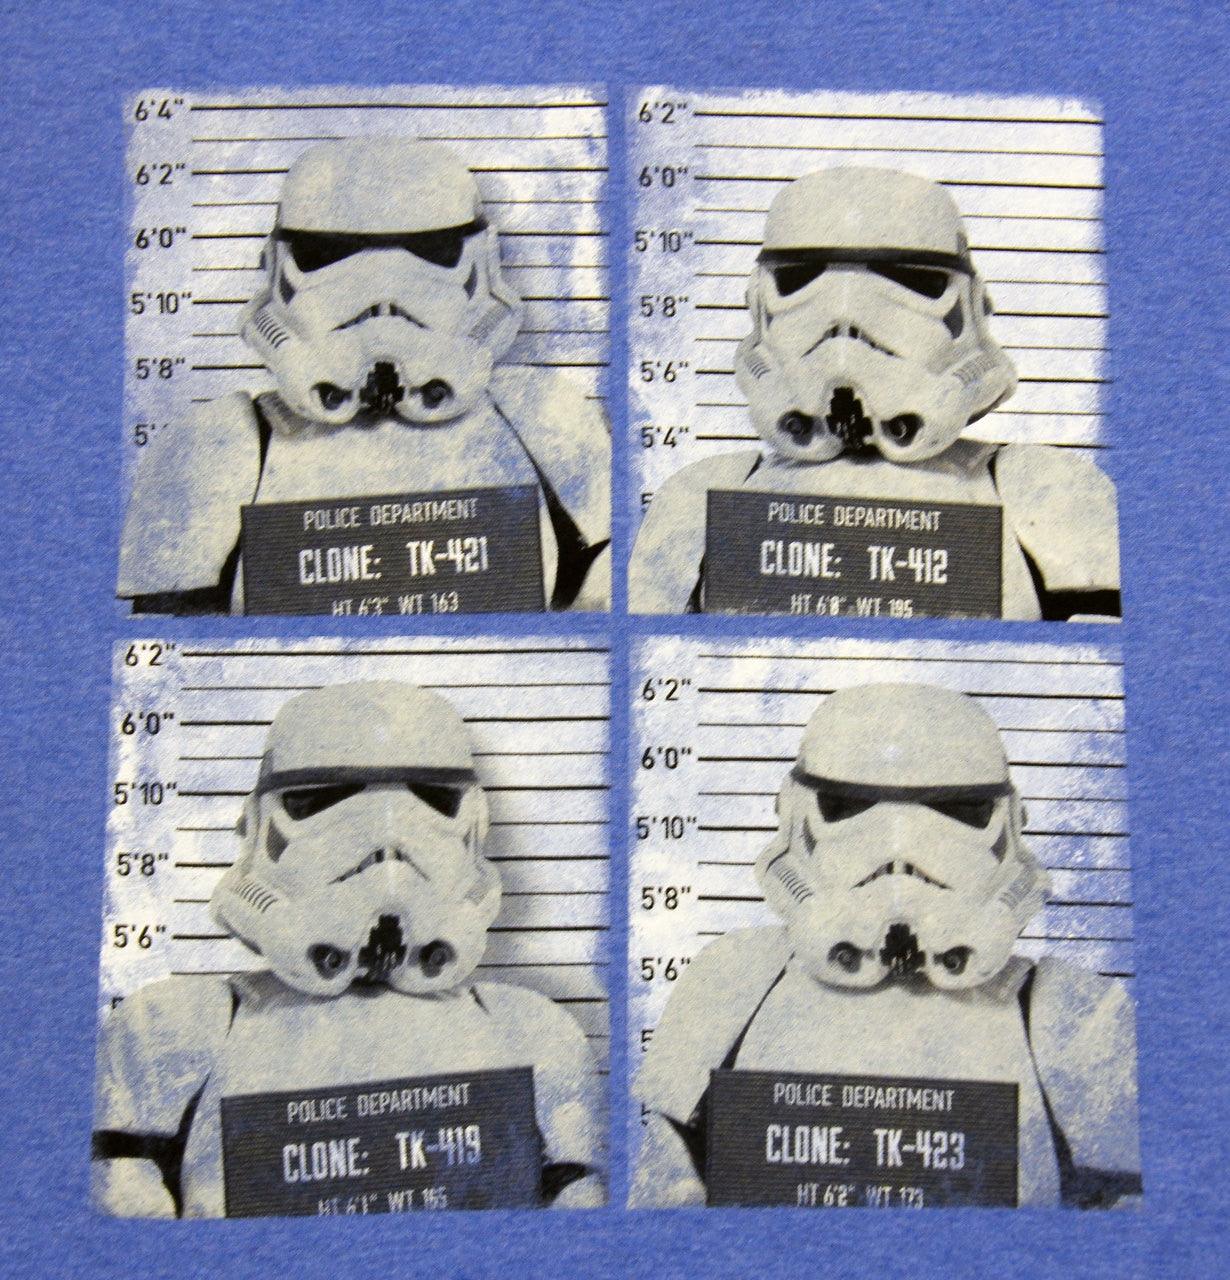 Storm Trooper Line Up Mug Shots T-shirt-tvso